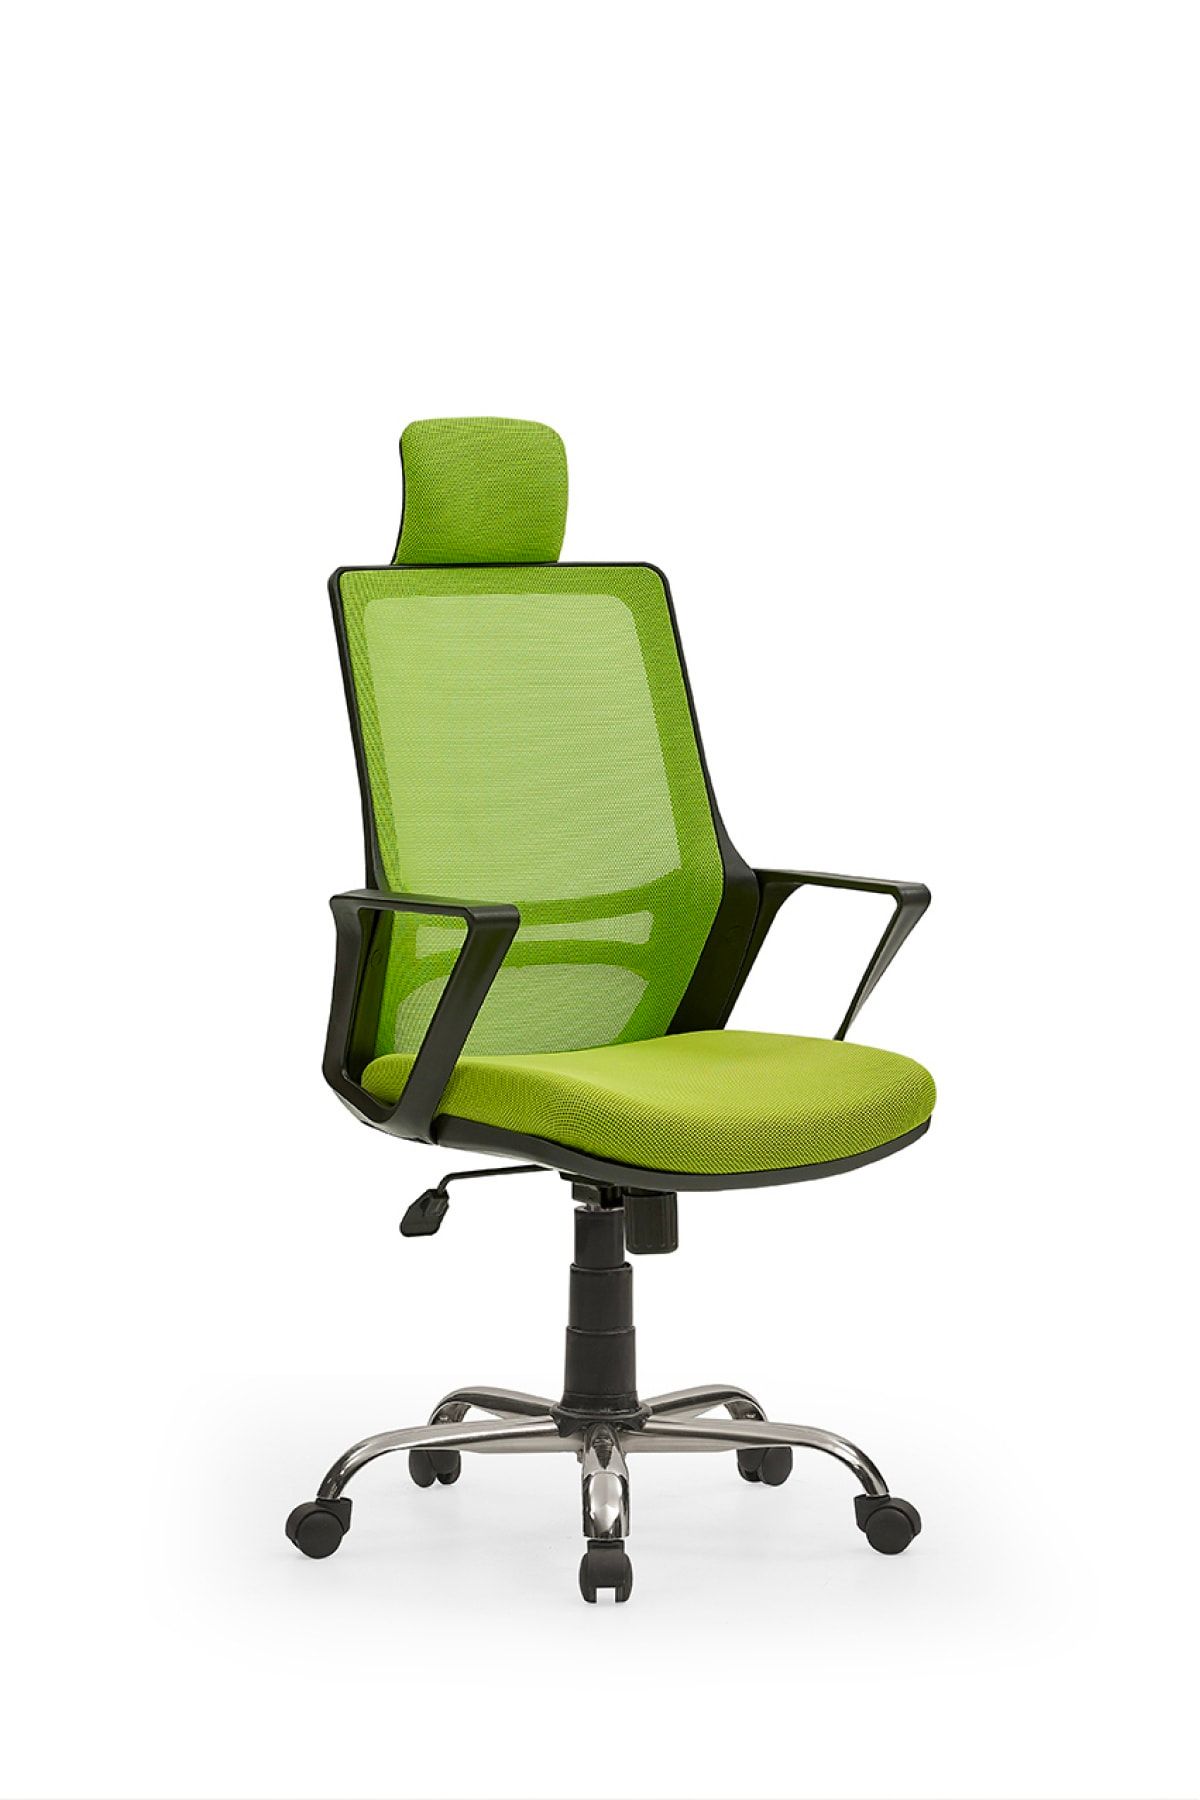 MEHMET YAREN BURO Arya2 Bilgisayar Koltuğu - Ofis - Müdür - Büro - Çalışma Sandalyesi Yeşil Renk Krom Ayaklı